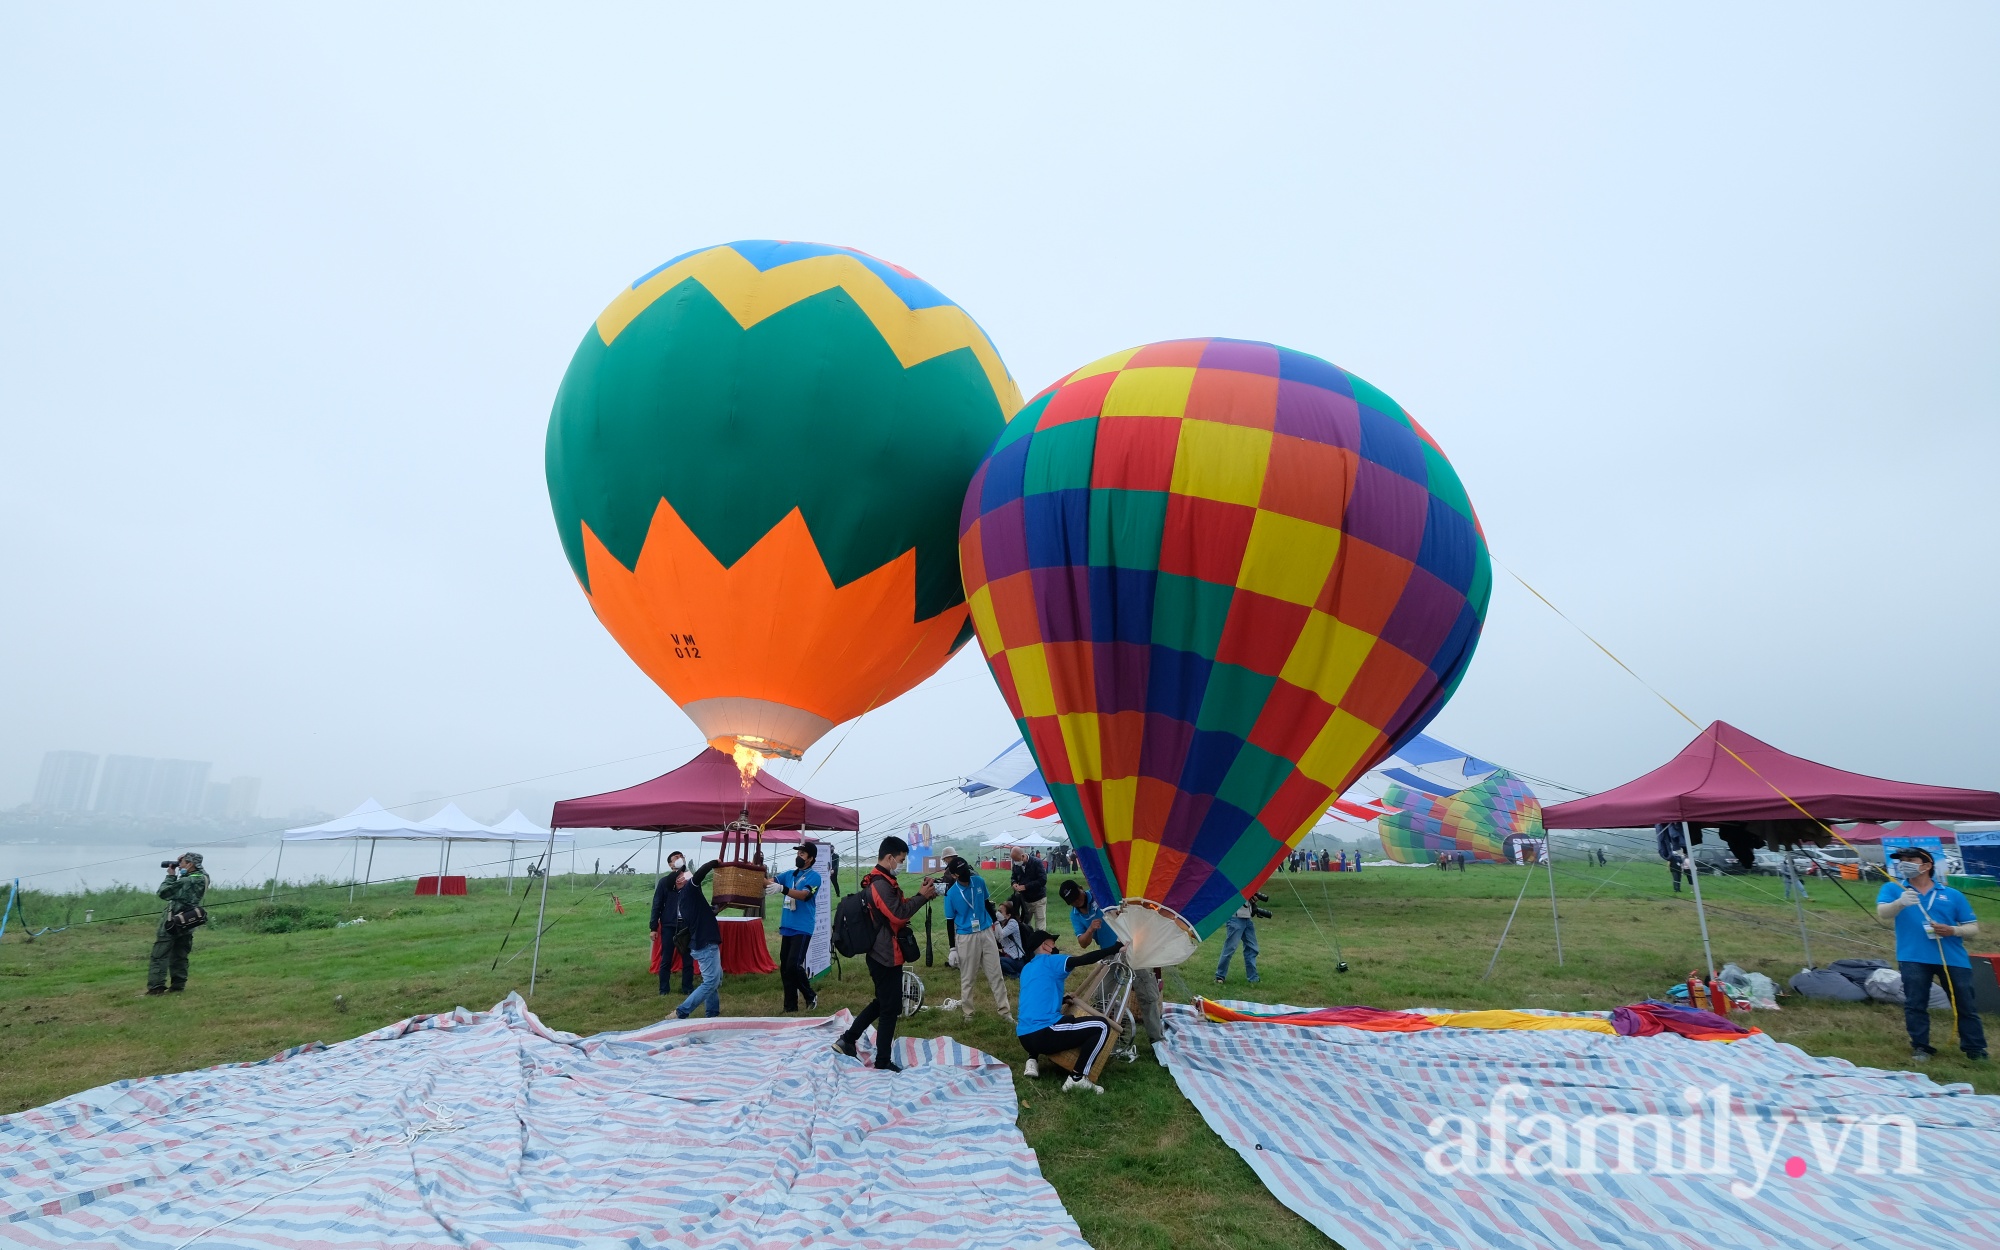 Lần đầu tiên tổ chức Ngày hội khinh khí cầu tại Hà Nội: Nhanh chân đến để trải nghiệm khoảnh khắc hiếm có ngắm thành phố từ trên cao - Ảnh 2.